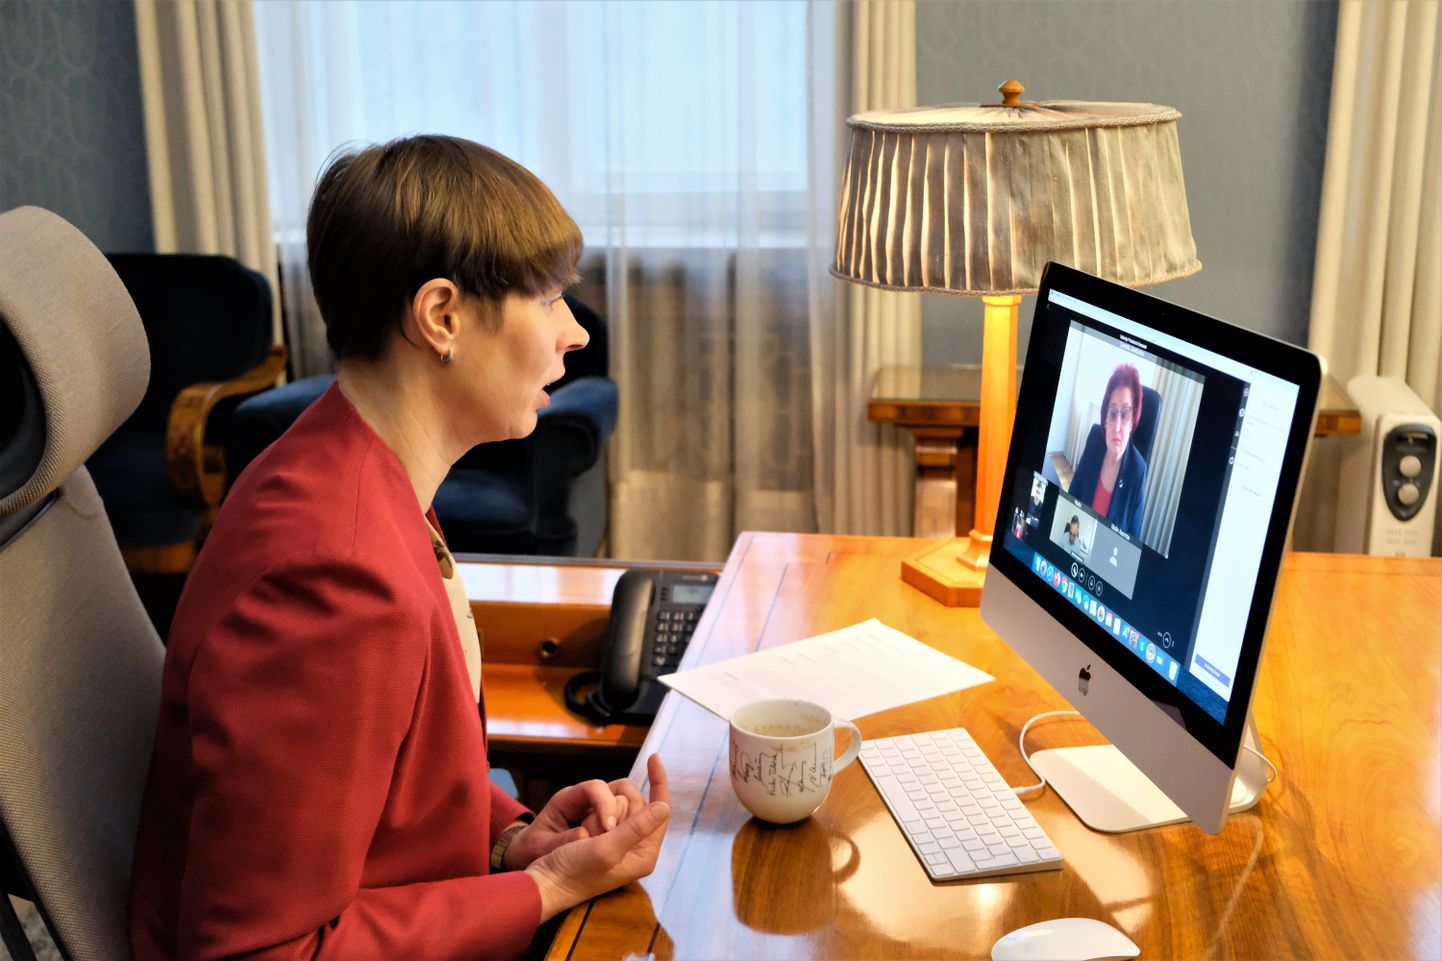 Керсти Кальюлайд вчера виртуально встретилась с мэром Кохтла-Ярве Людмилой Янченко.